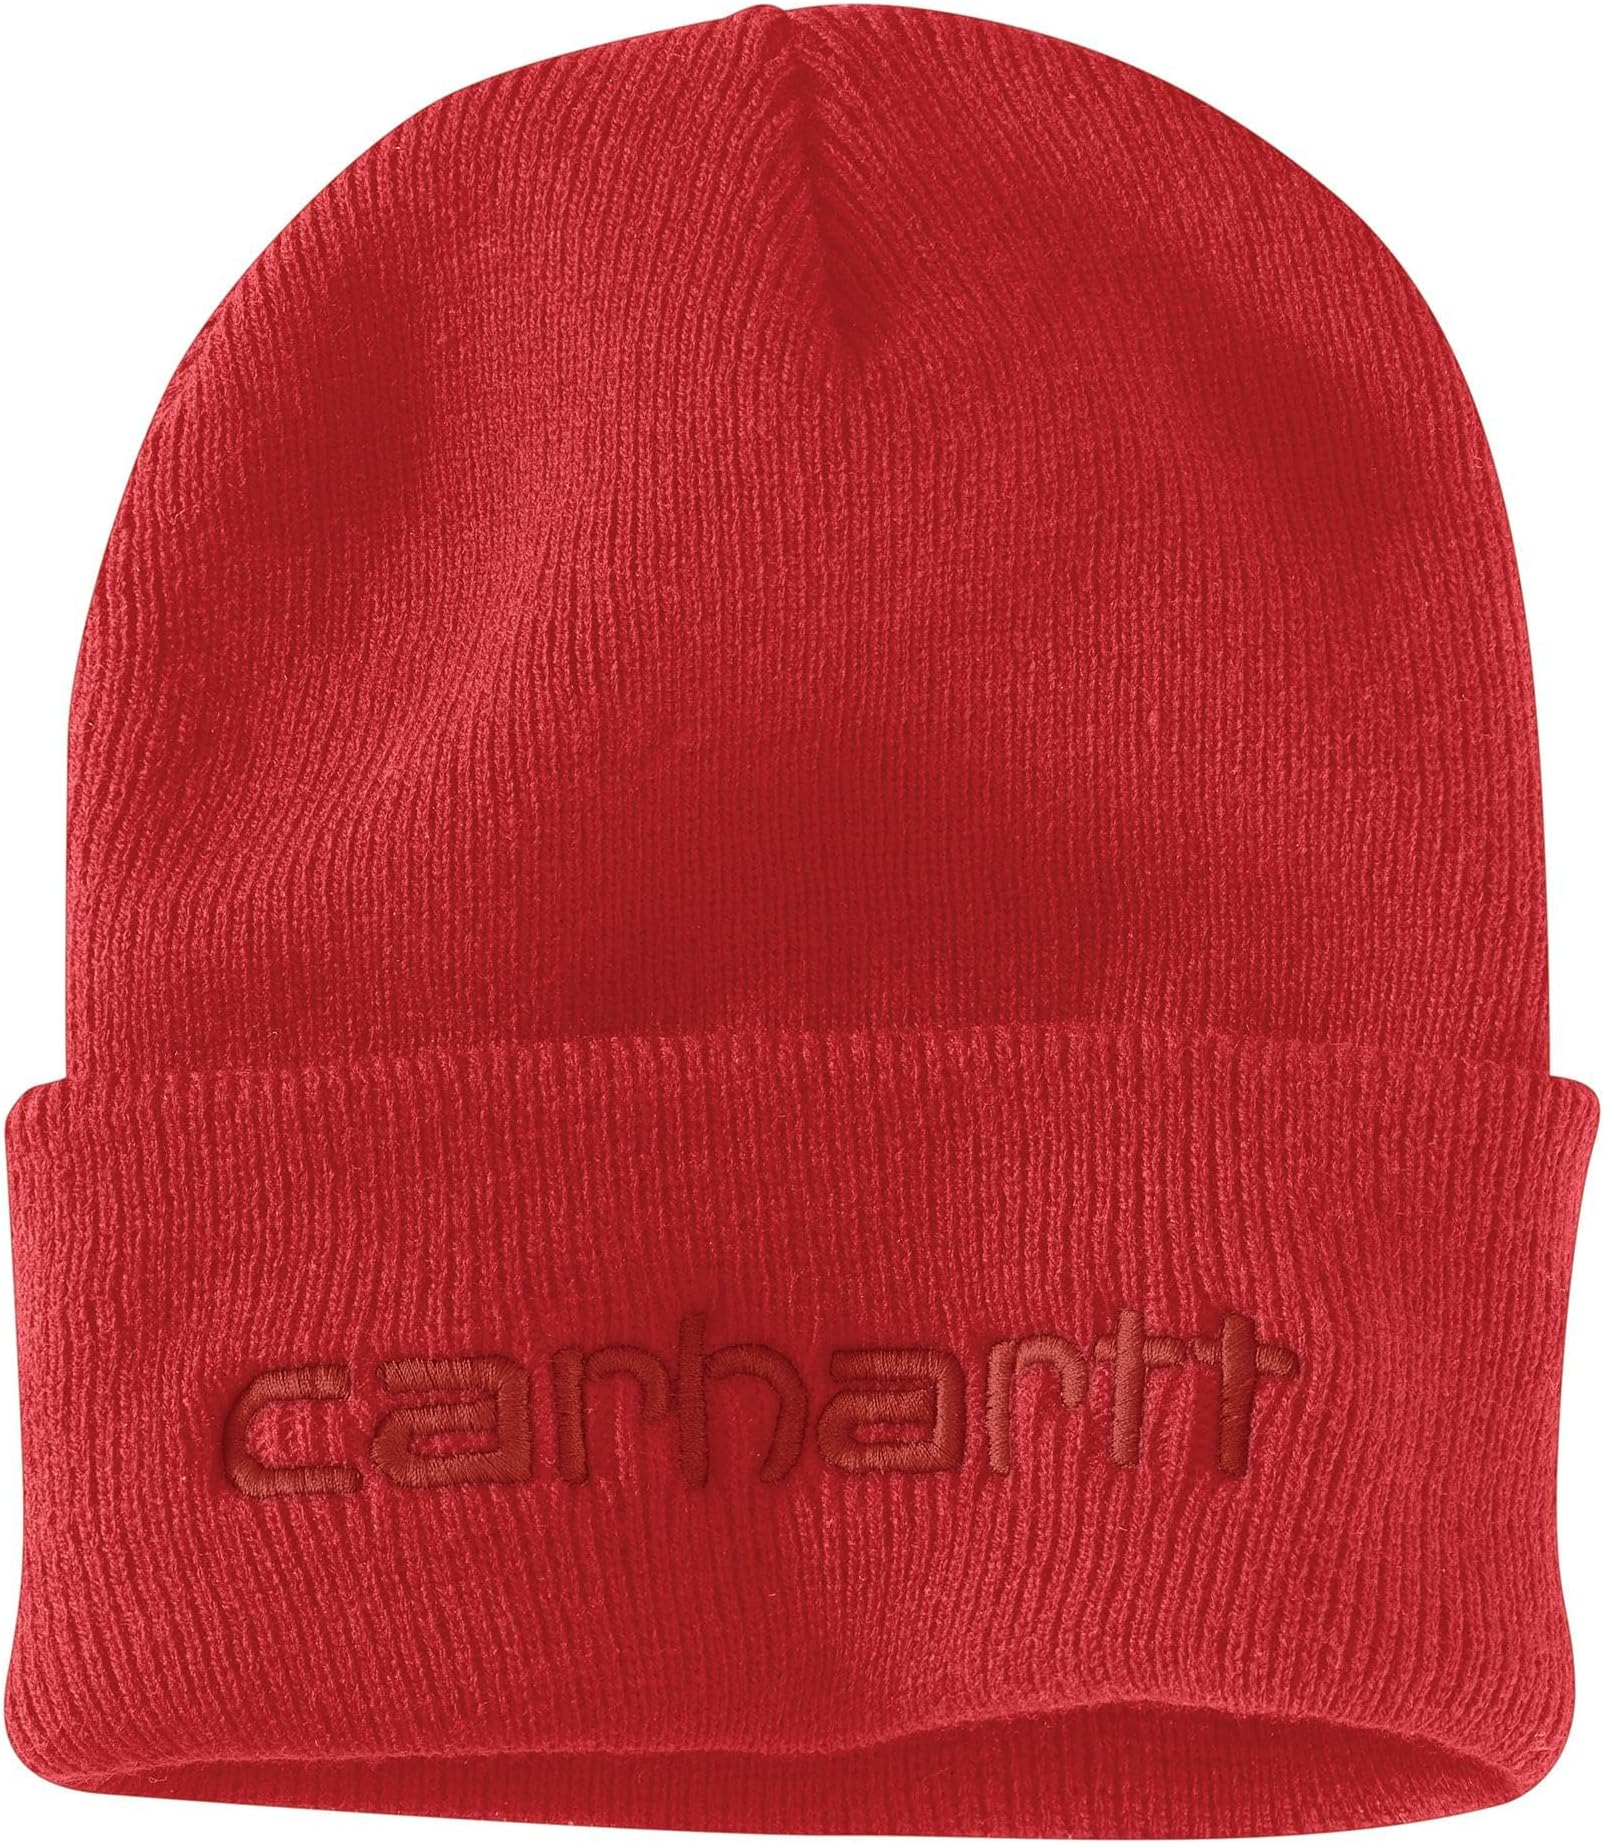 Вязаная утепленная шапка с логотипом и графическим манжетом Carhartt, цвет Red Barn наушники barn